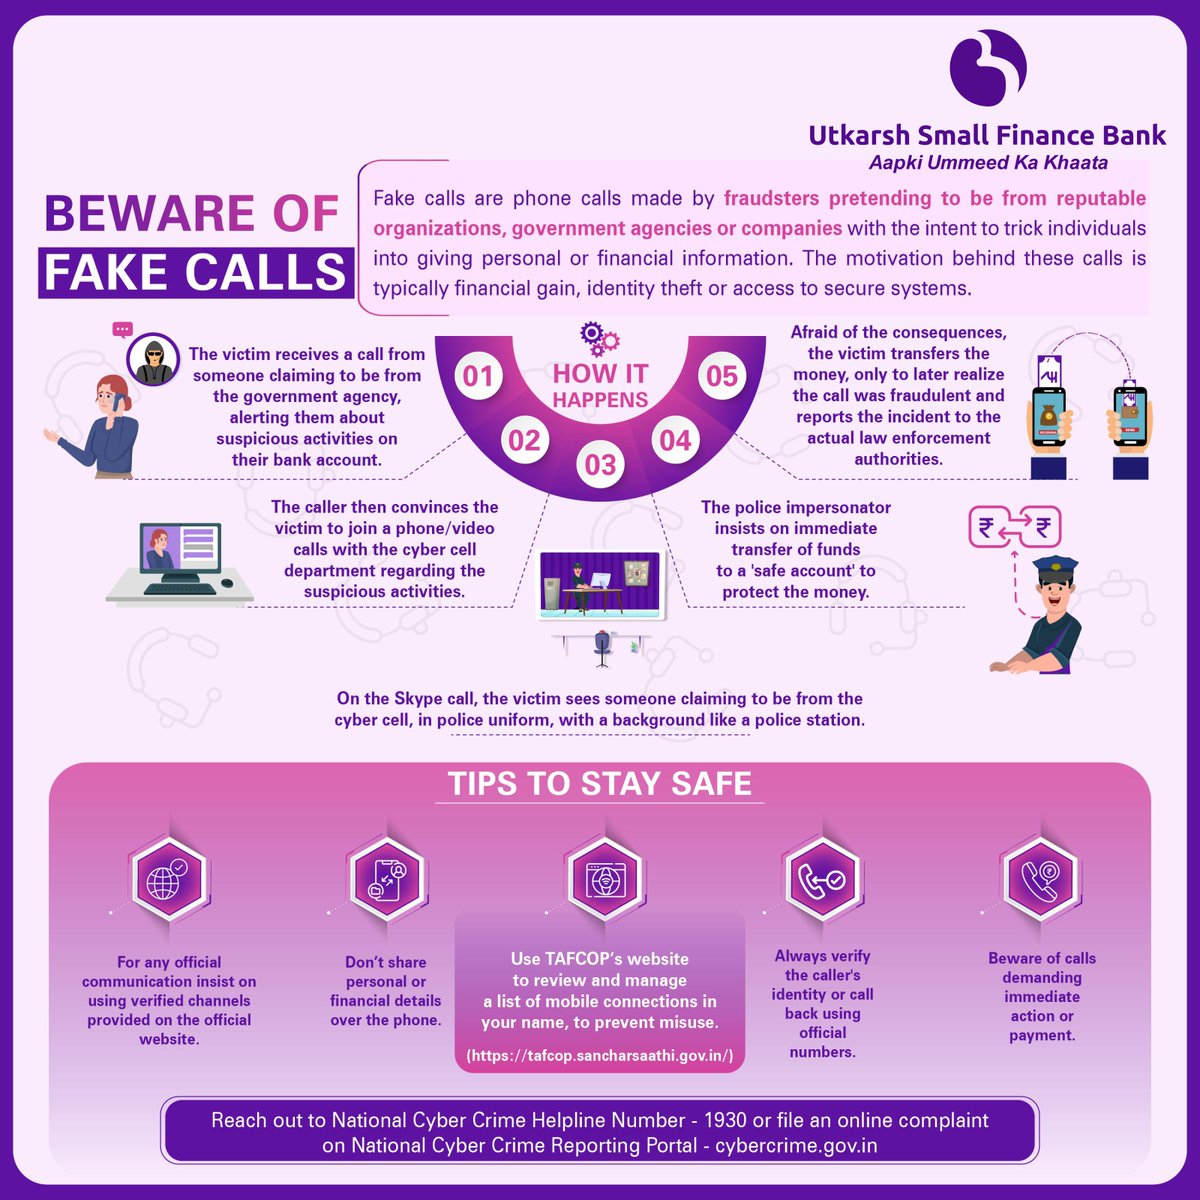 Beware of Fake Calls. #FakeCalls #Awareness #Utkarshsmallfinancebank #BFSI